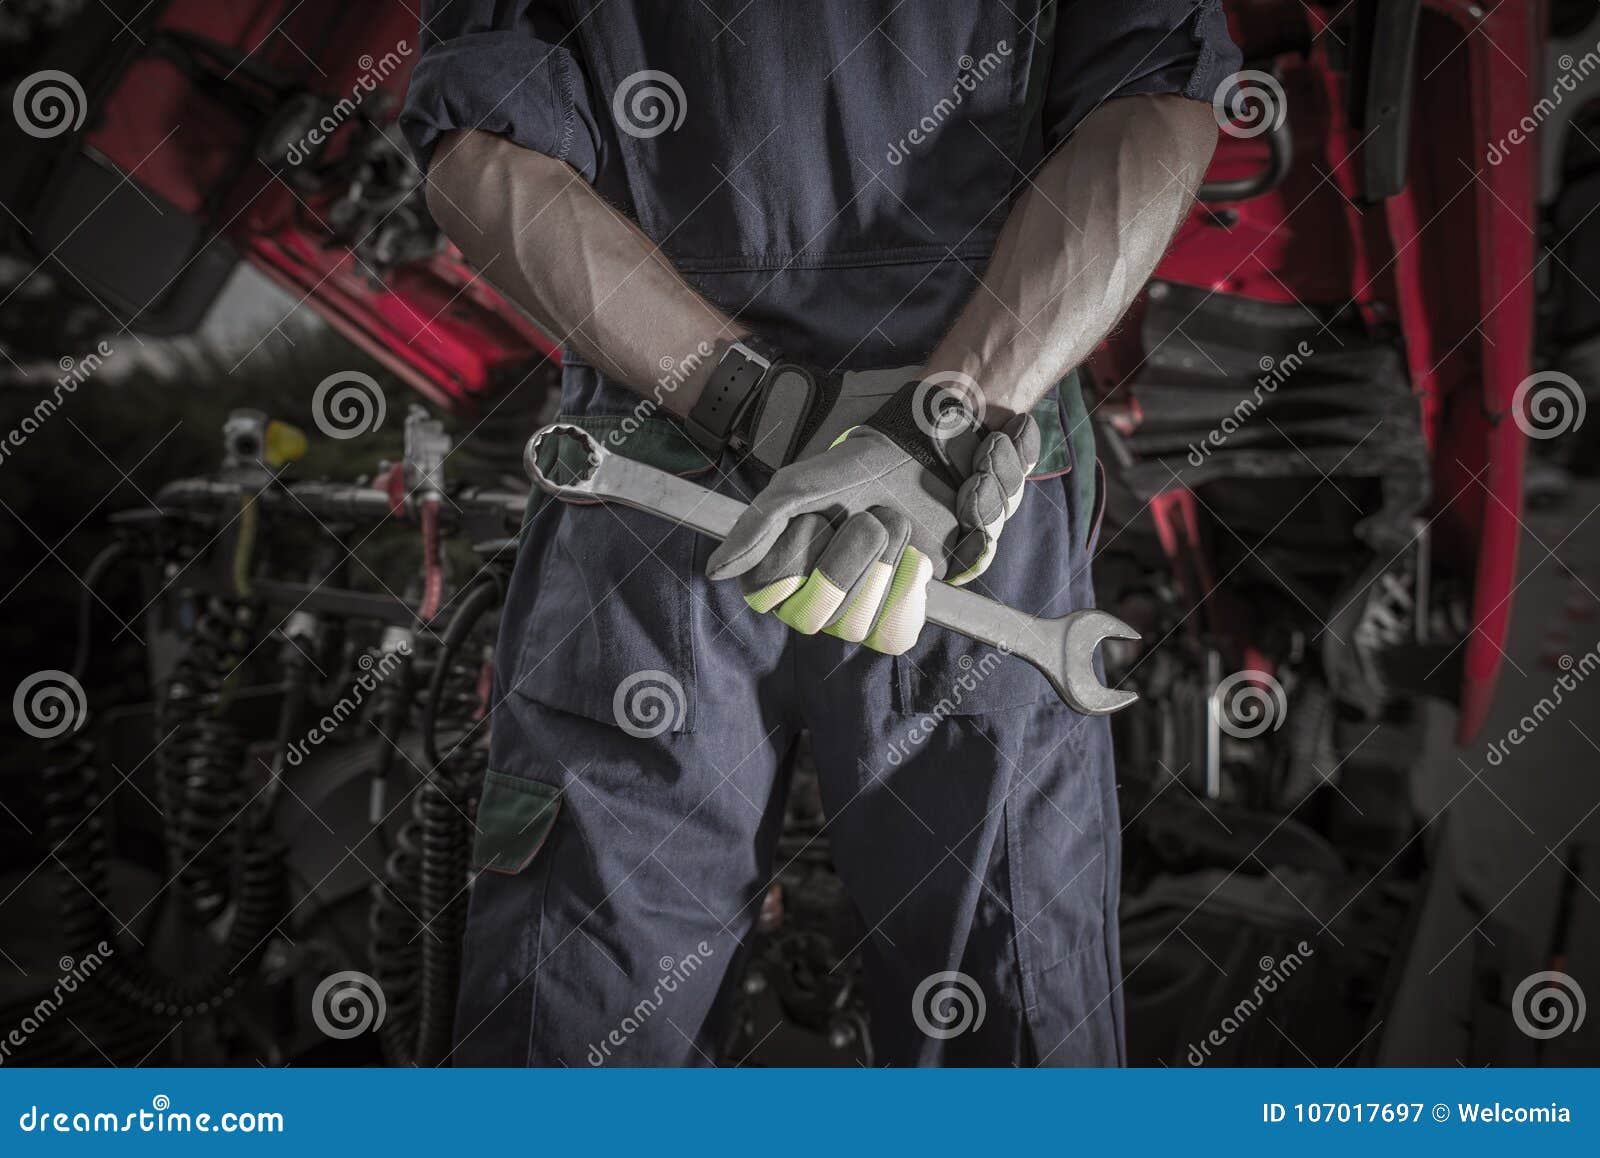 semi truck pro mechanic